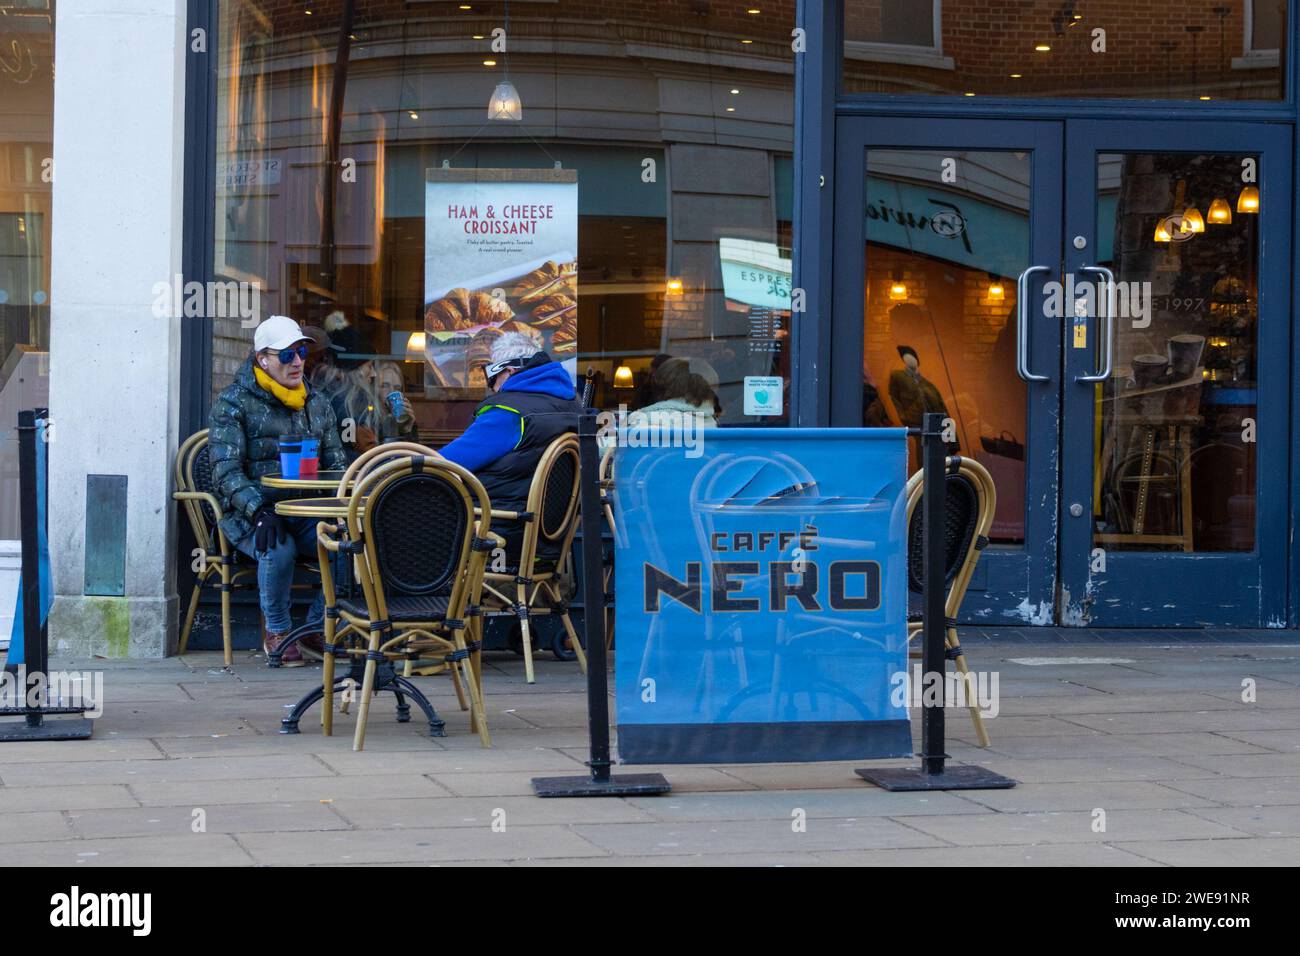 Caffe nero outside frontage, canterbury, kent, uk Stock Photo